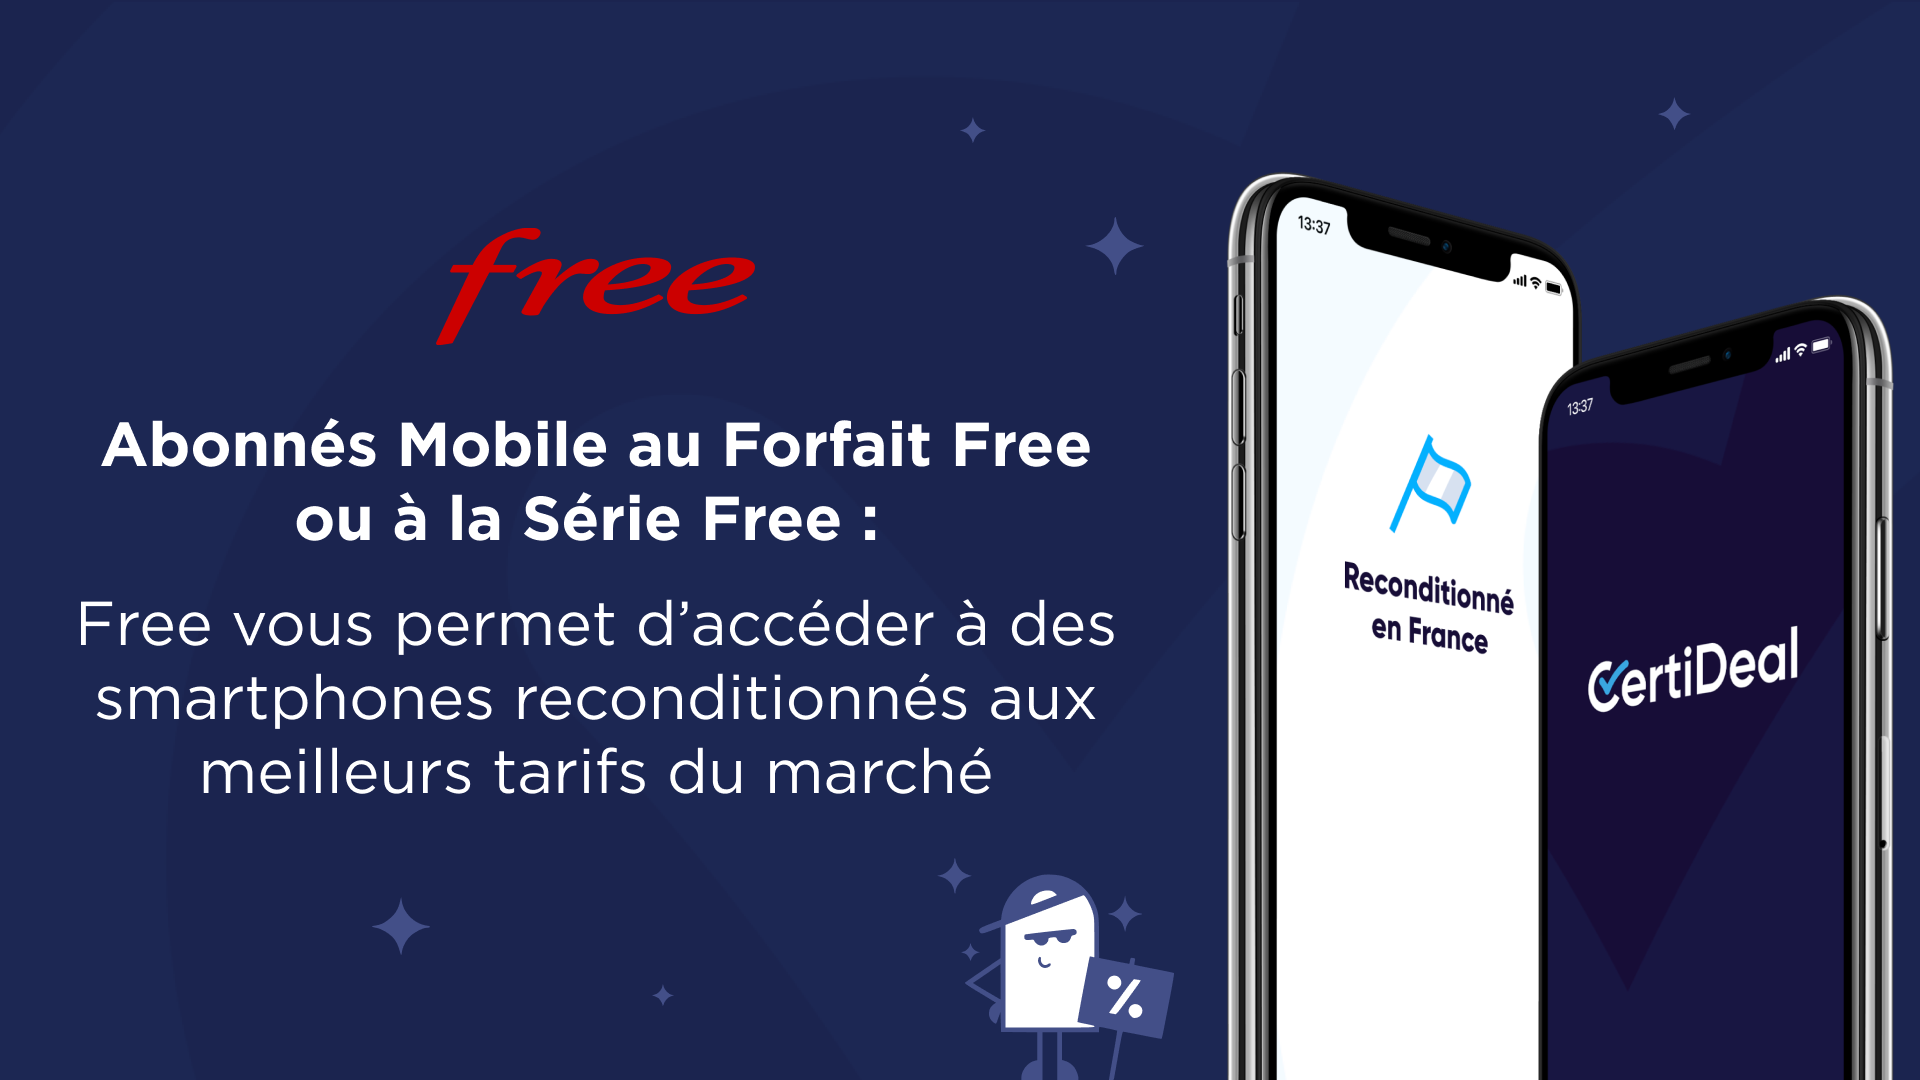 Free permet à ses abonnés Mobile d'accéder à des smartphones reconditionnés aux meilleurs tarifs du marché